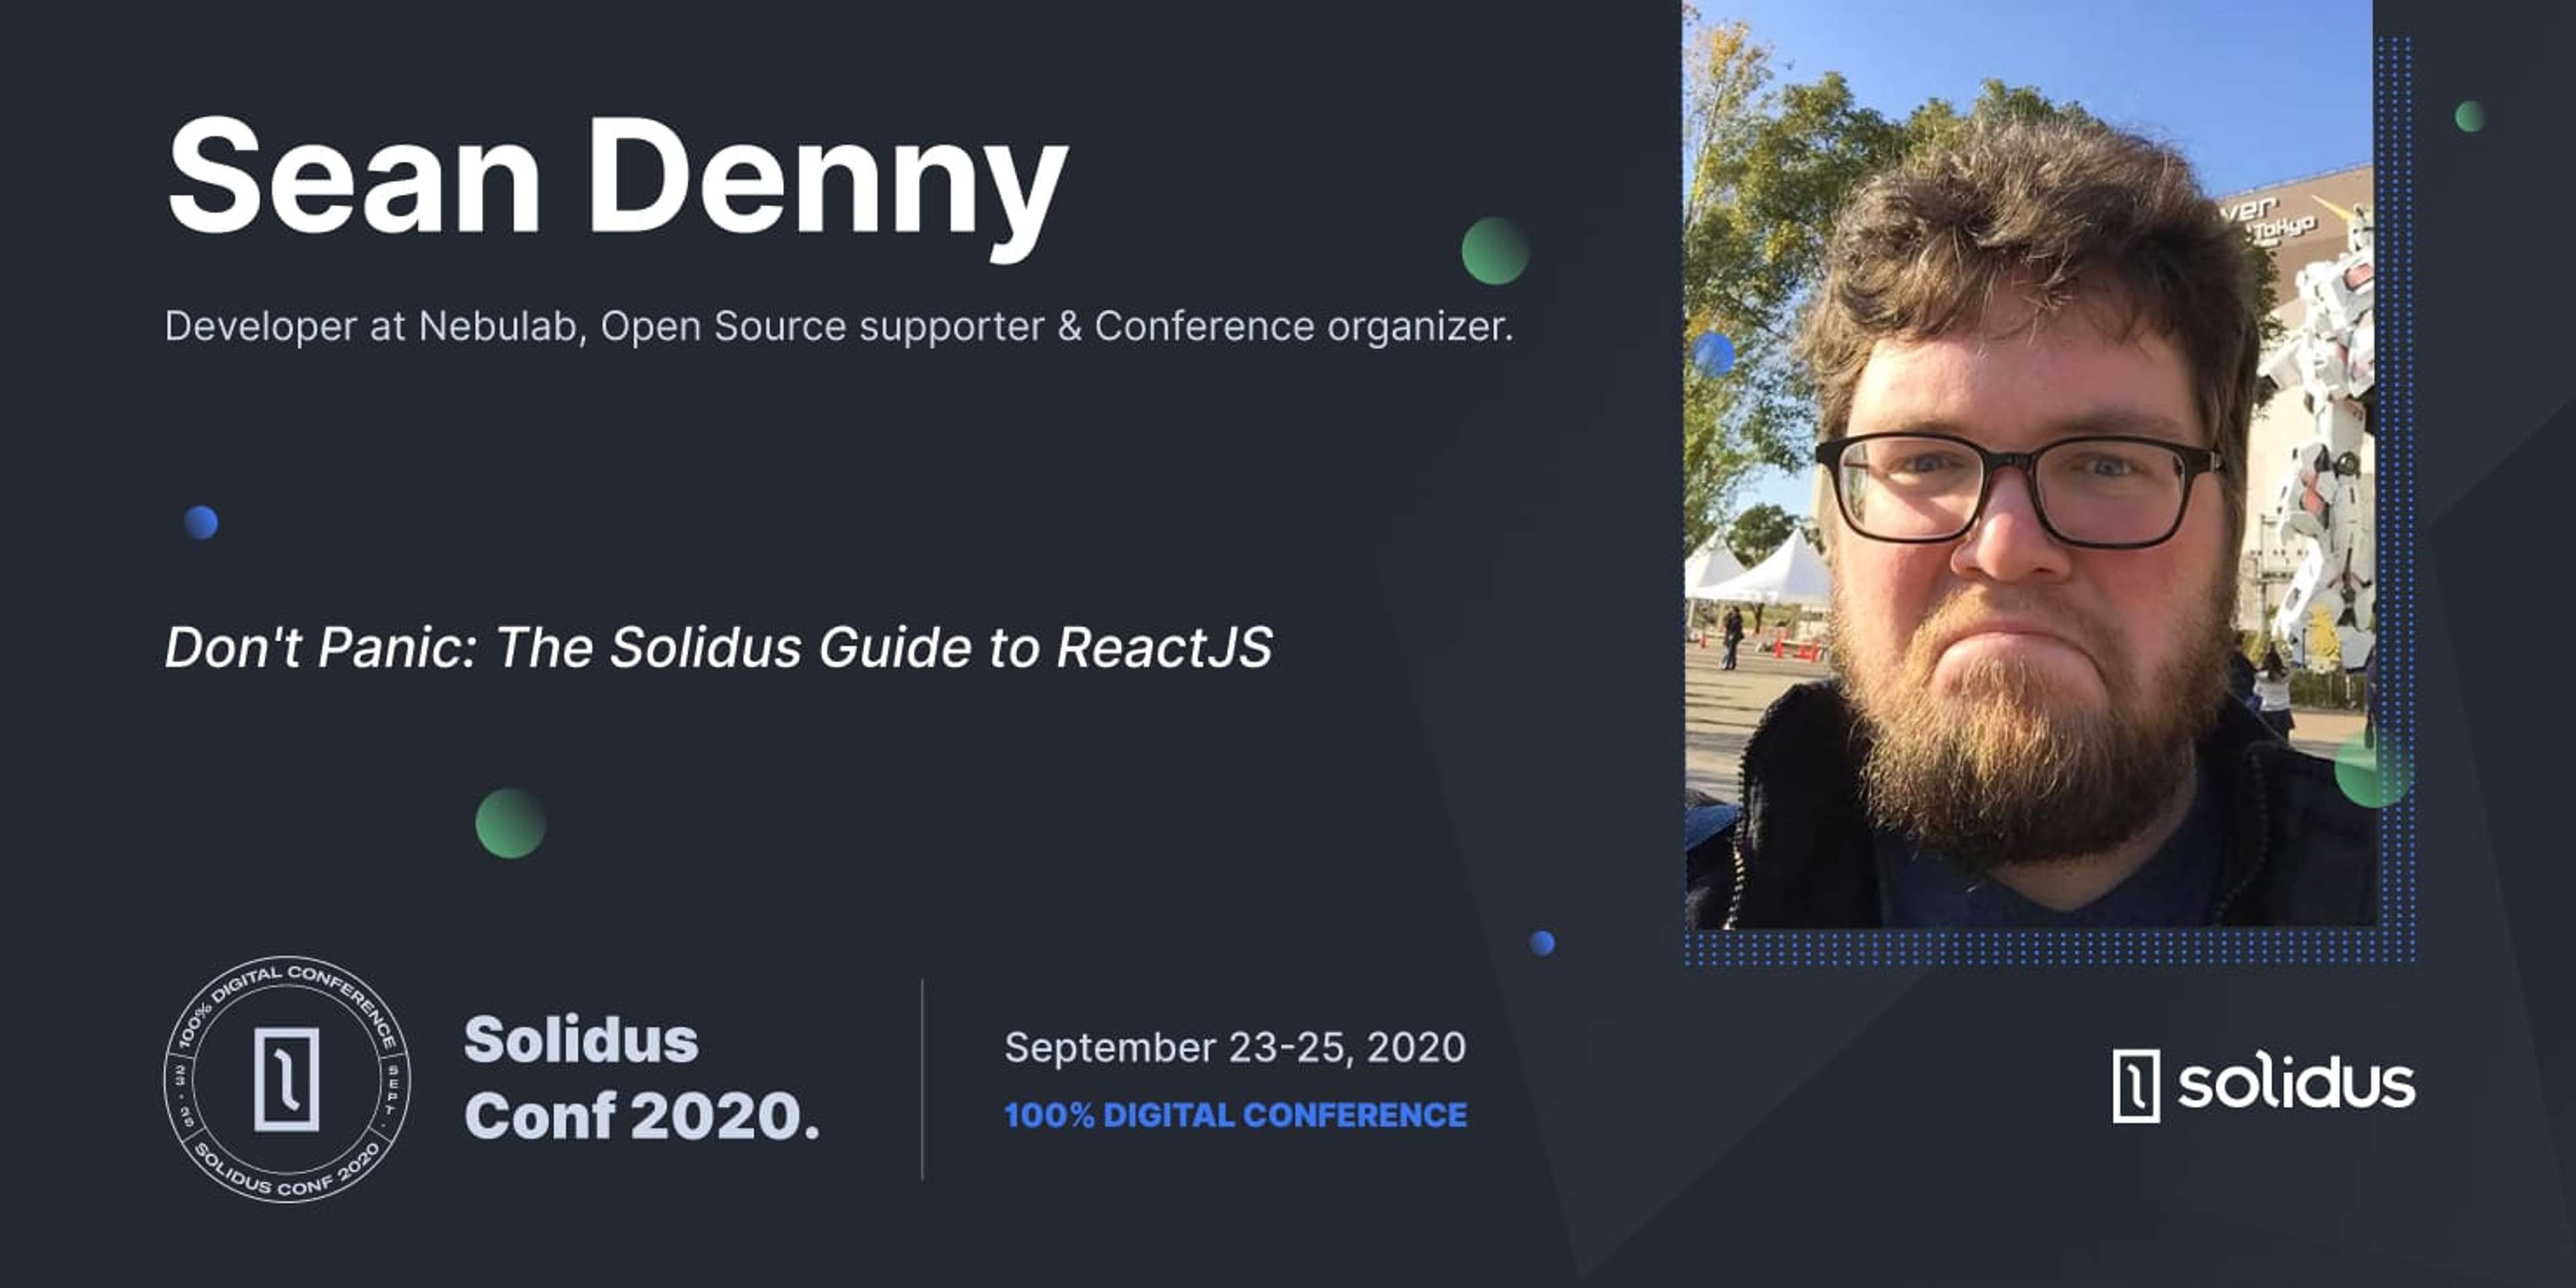 SolidusConf 2020 Presenter Sean Denny